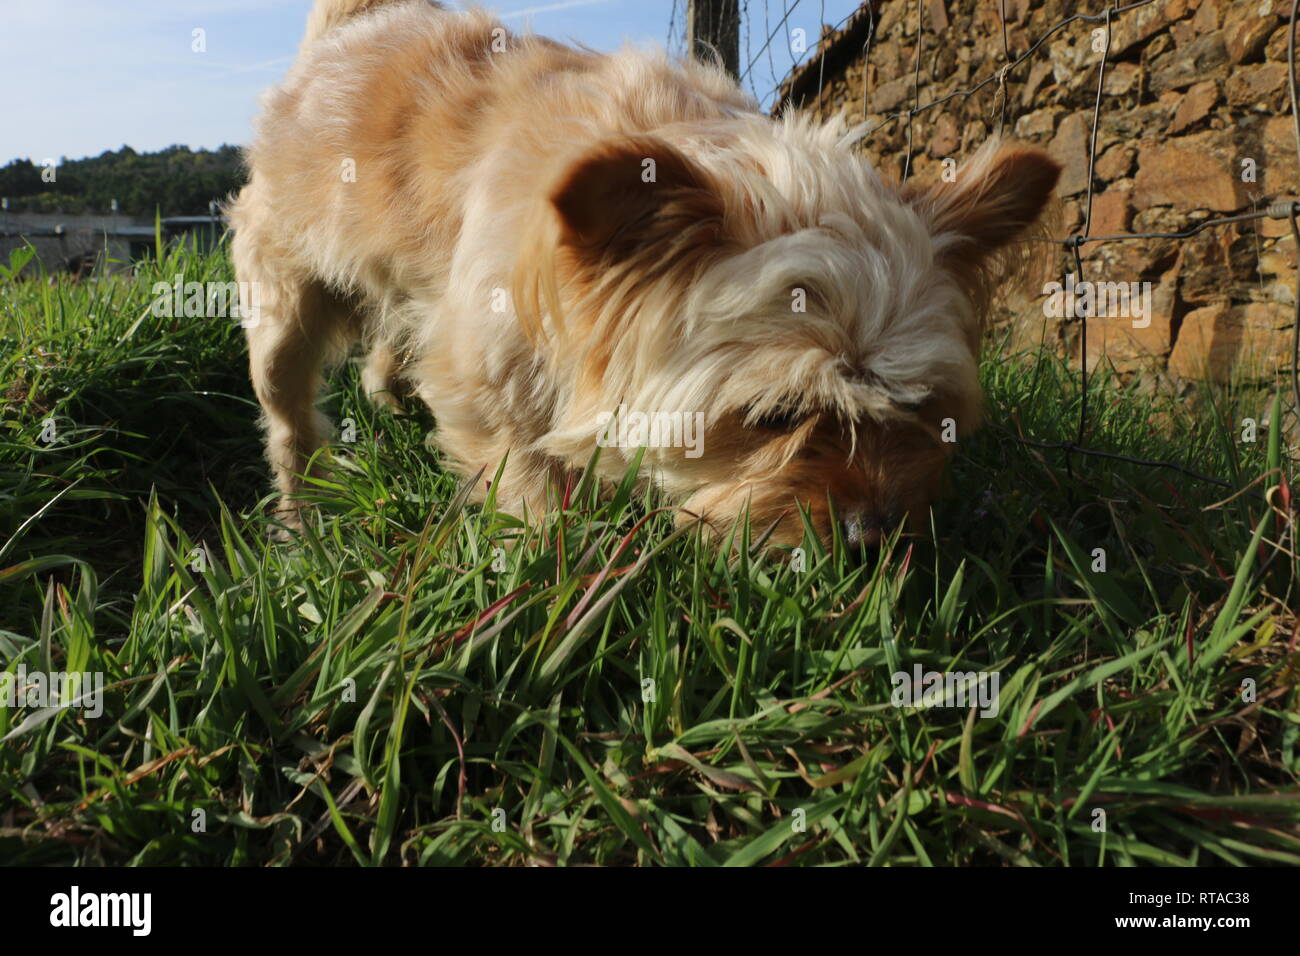 Un chien qui peut faire rire tout le monde. Incroyable chien qui aime être sur les champs verts, sur l'odeur sauvage de la nature. Banque D'Images